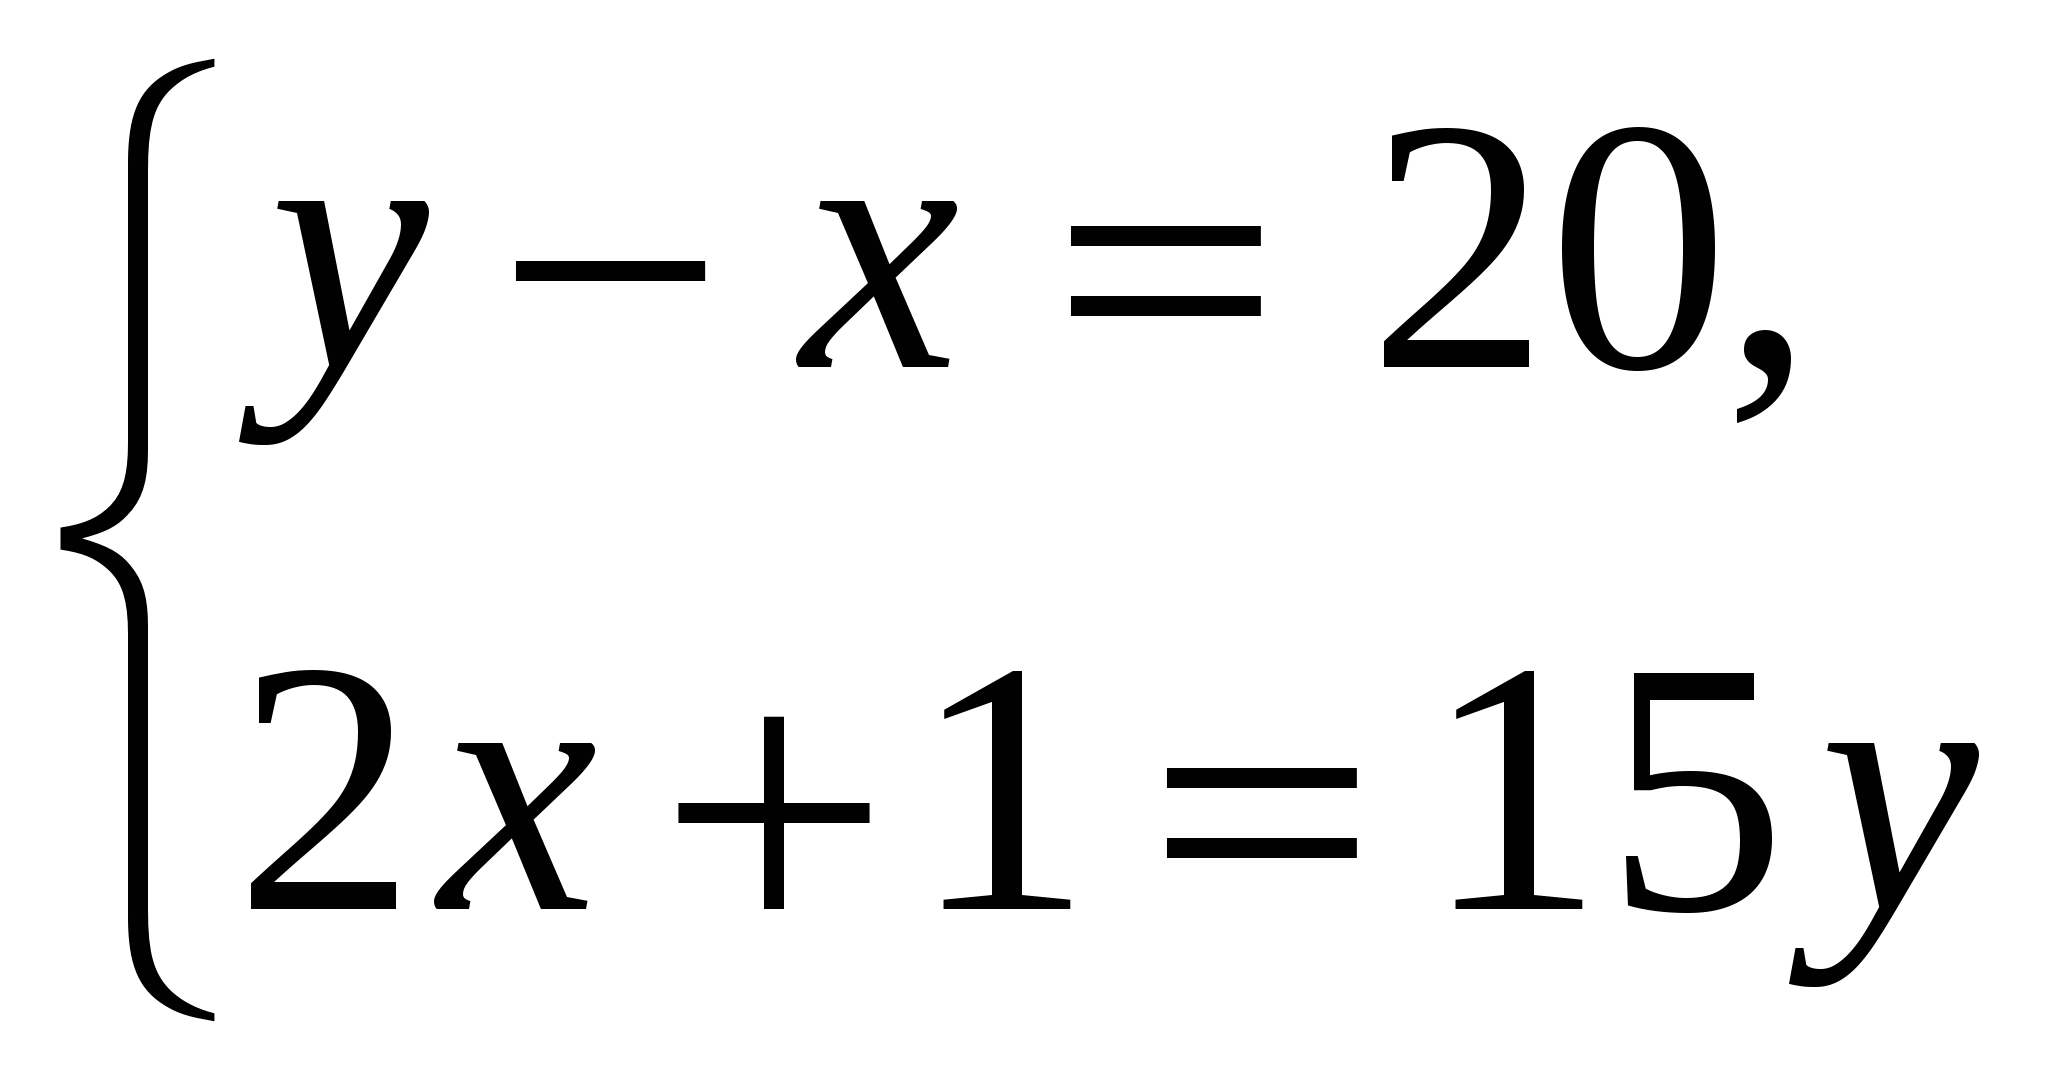 9 класс Самостоятельная работа Решение систем уравнений с двумя переменными